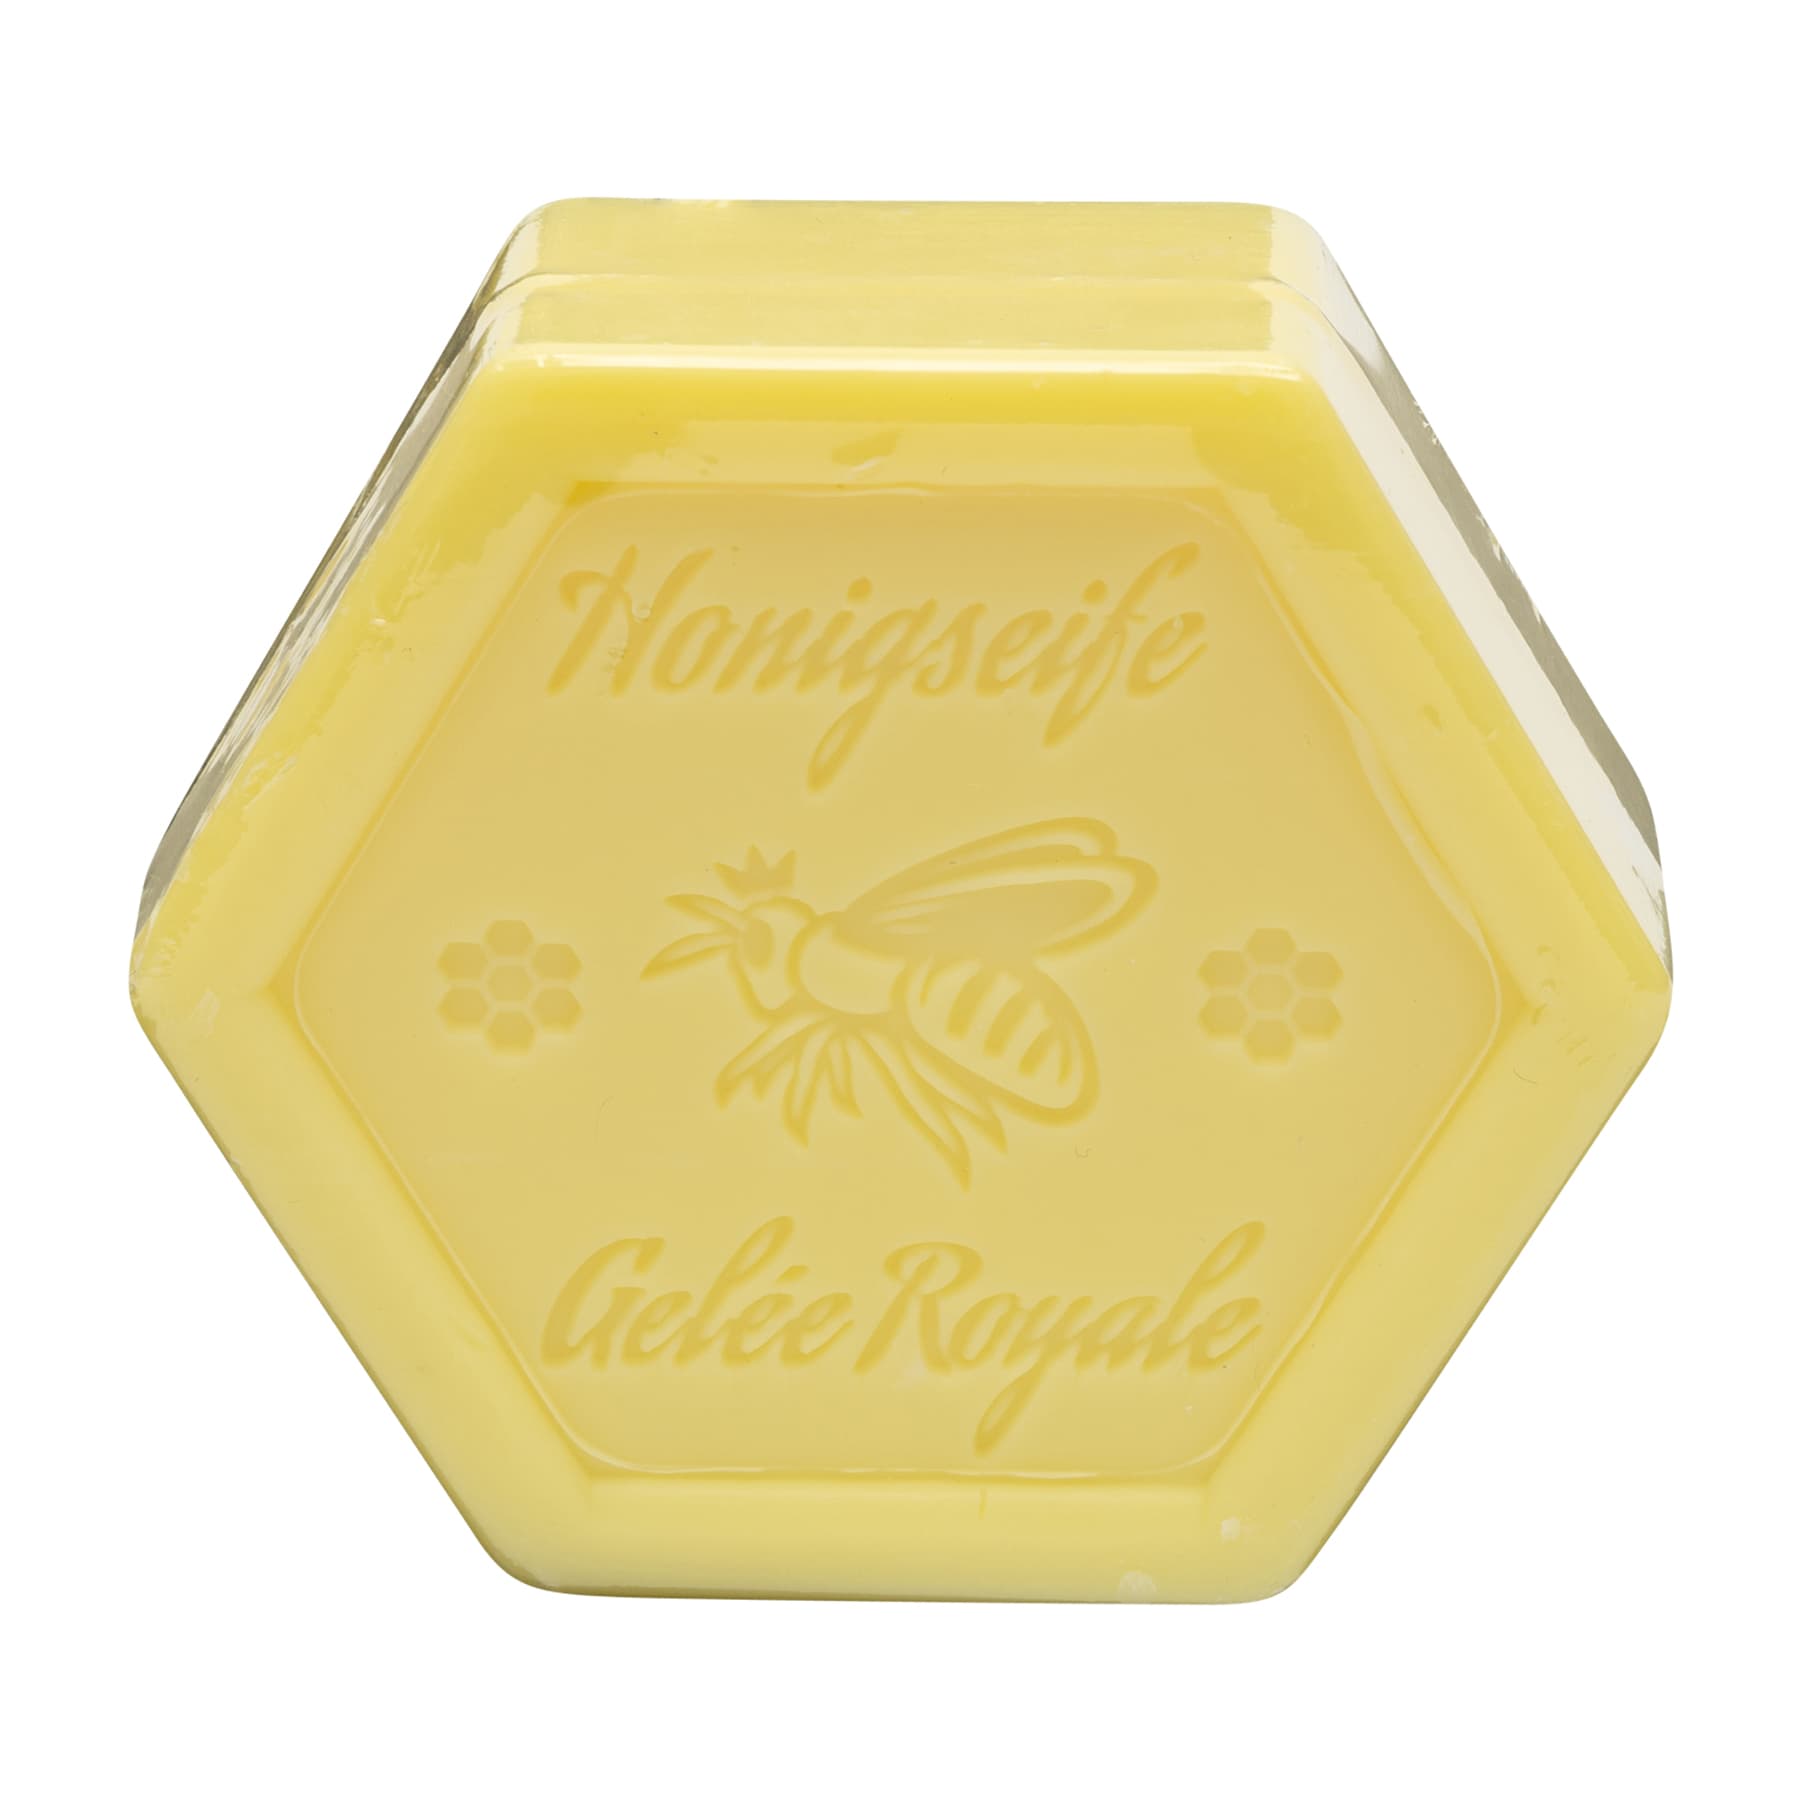 Honigseife mit Gelee Royale 100 g in Sechseckform, foliert und etikettiert